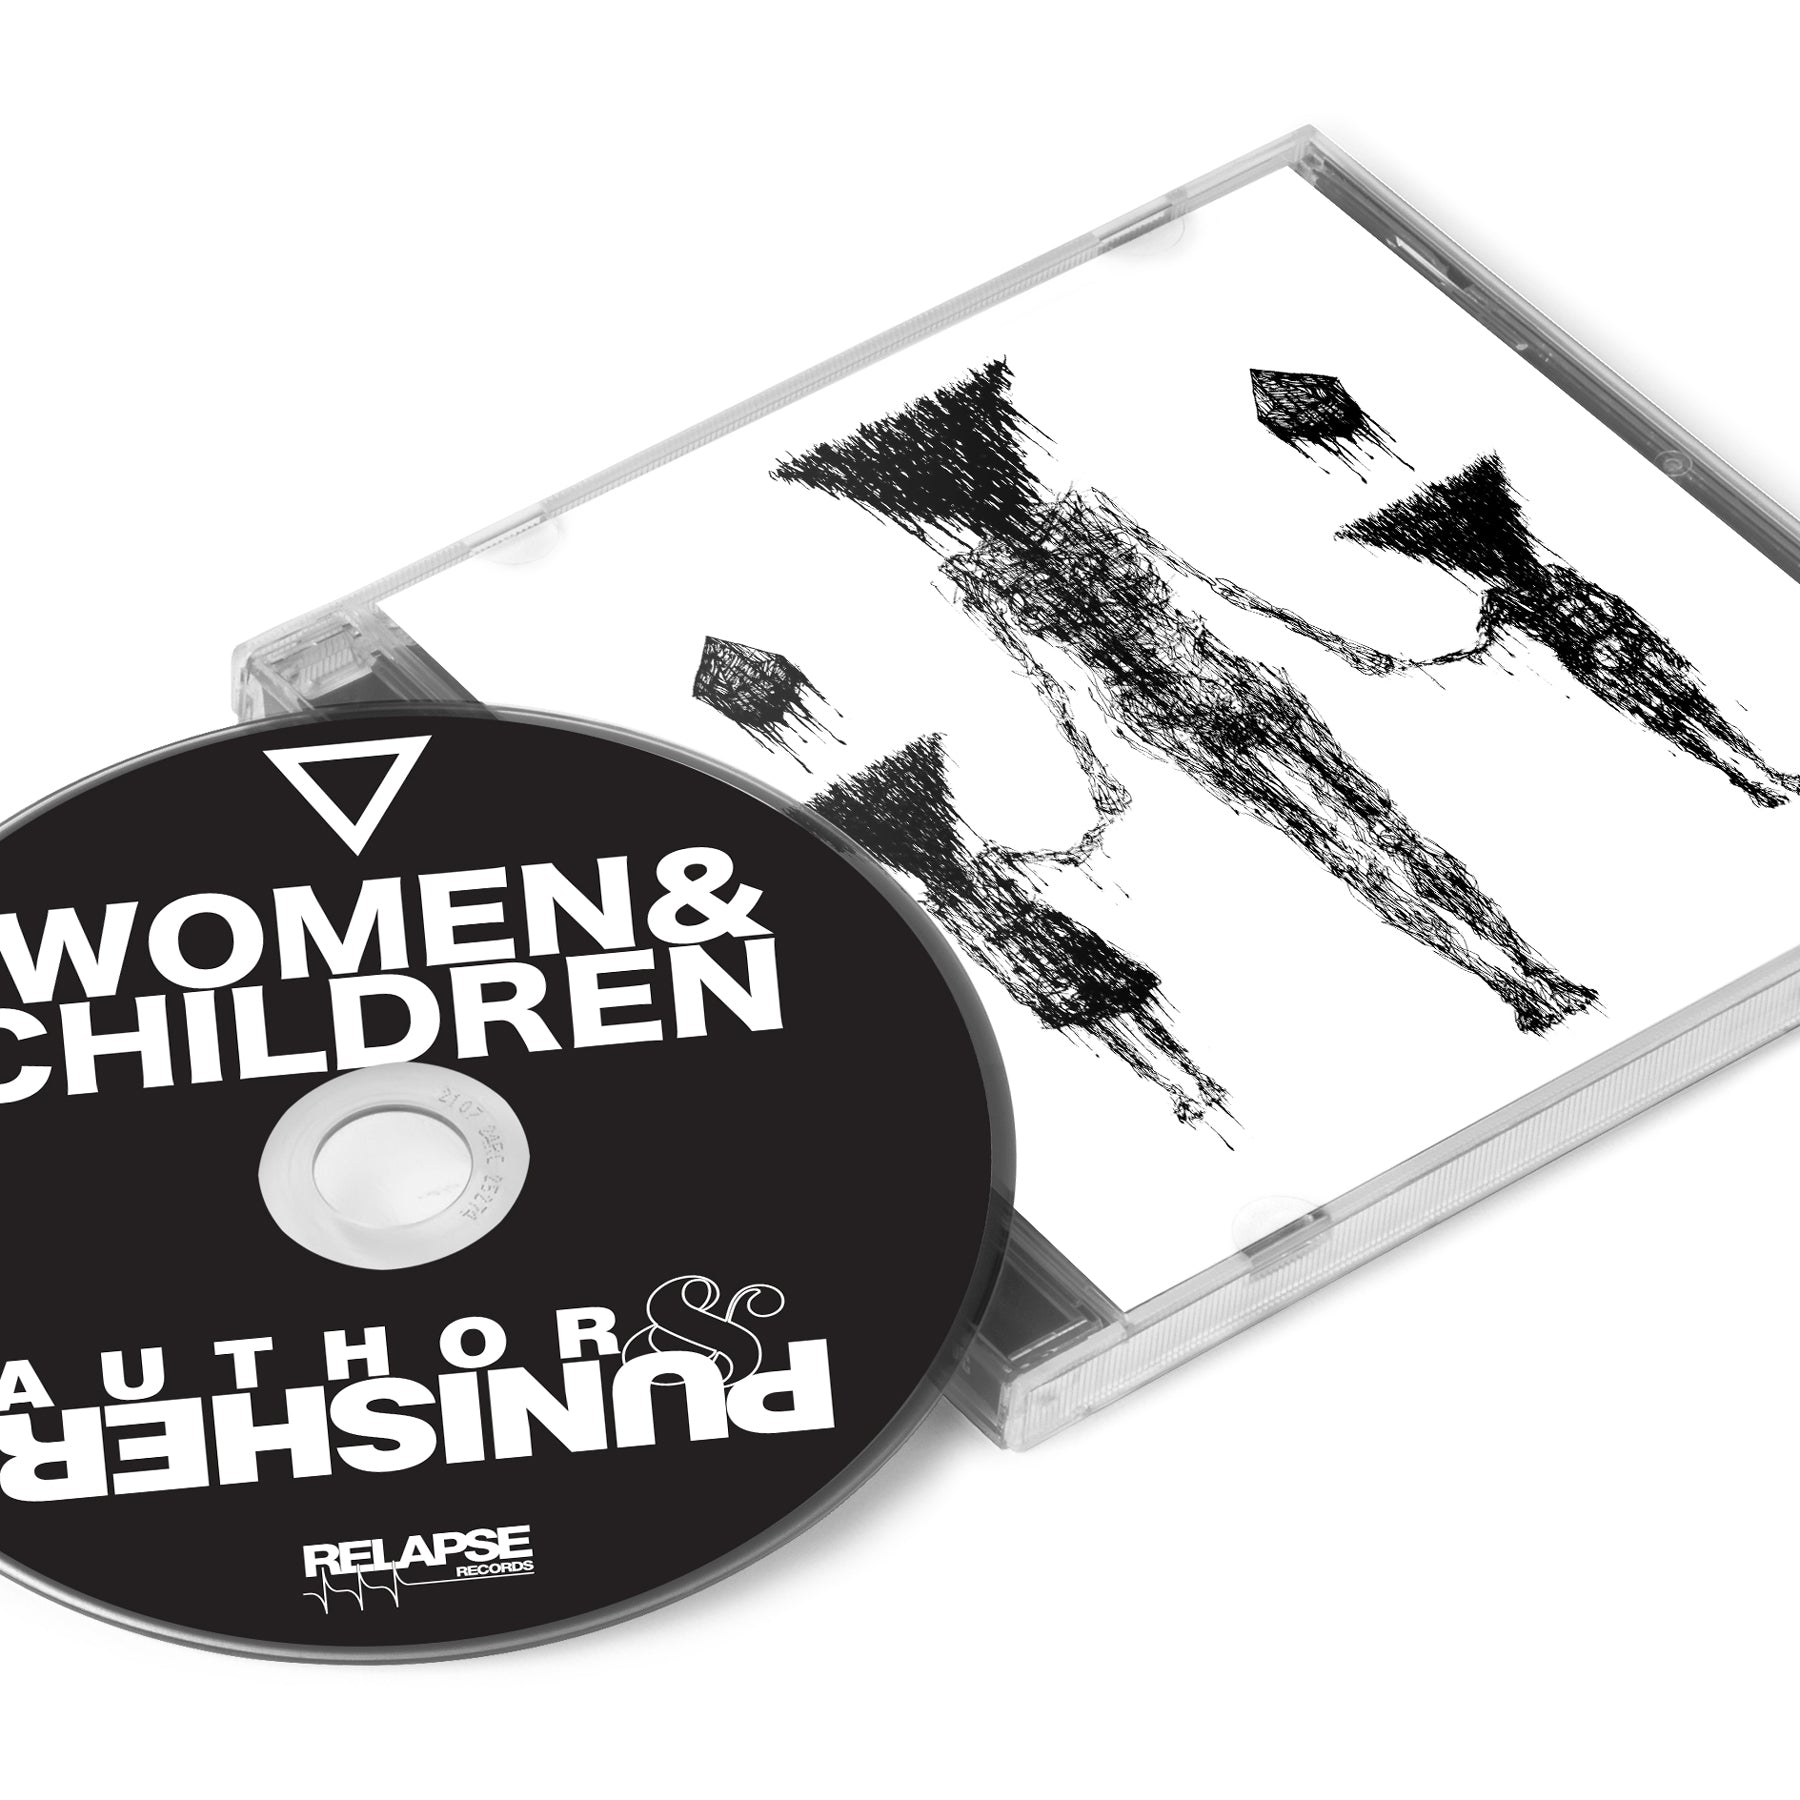 Author & Punisher "Women & Children" CD